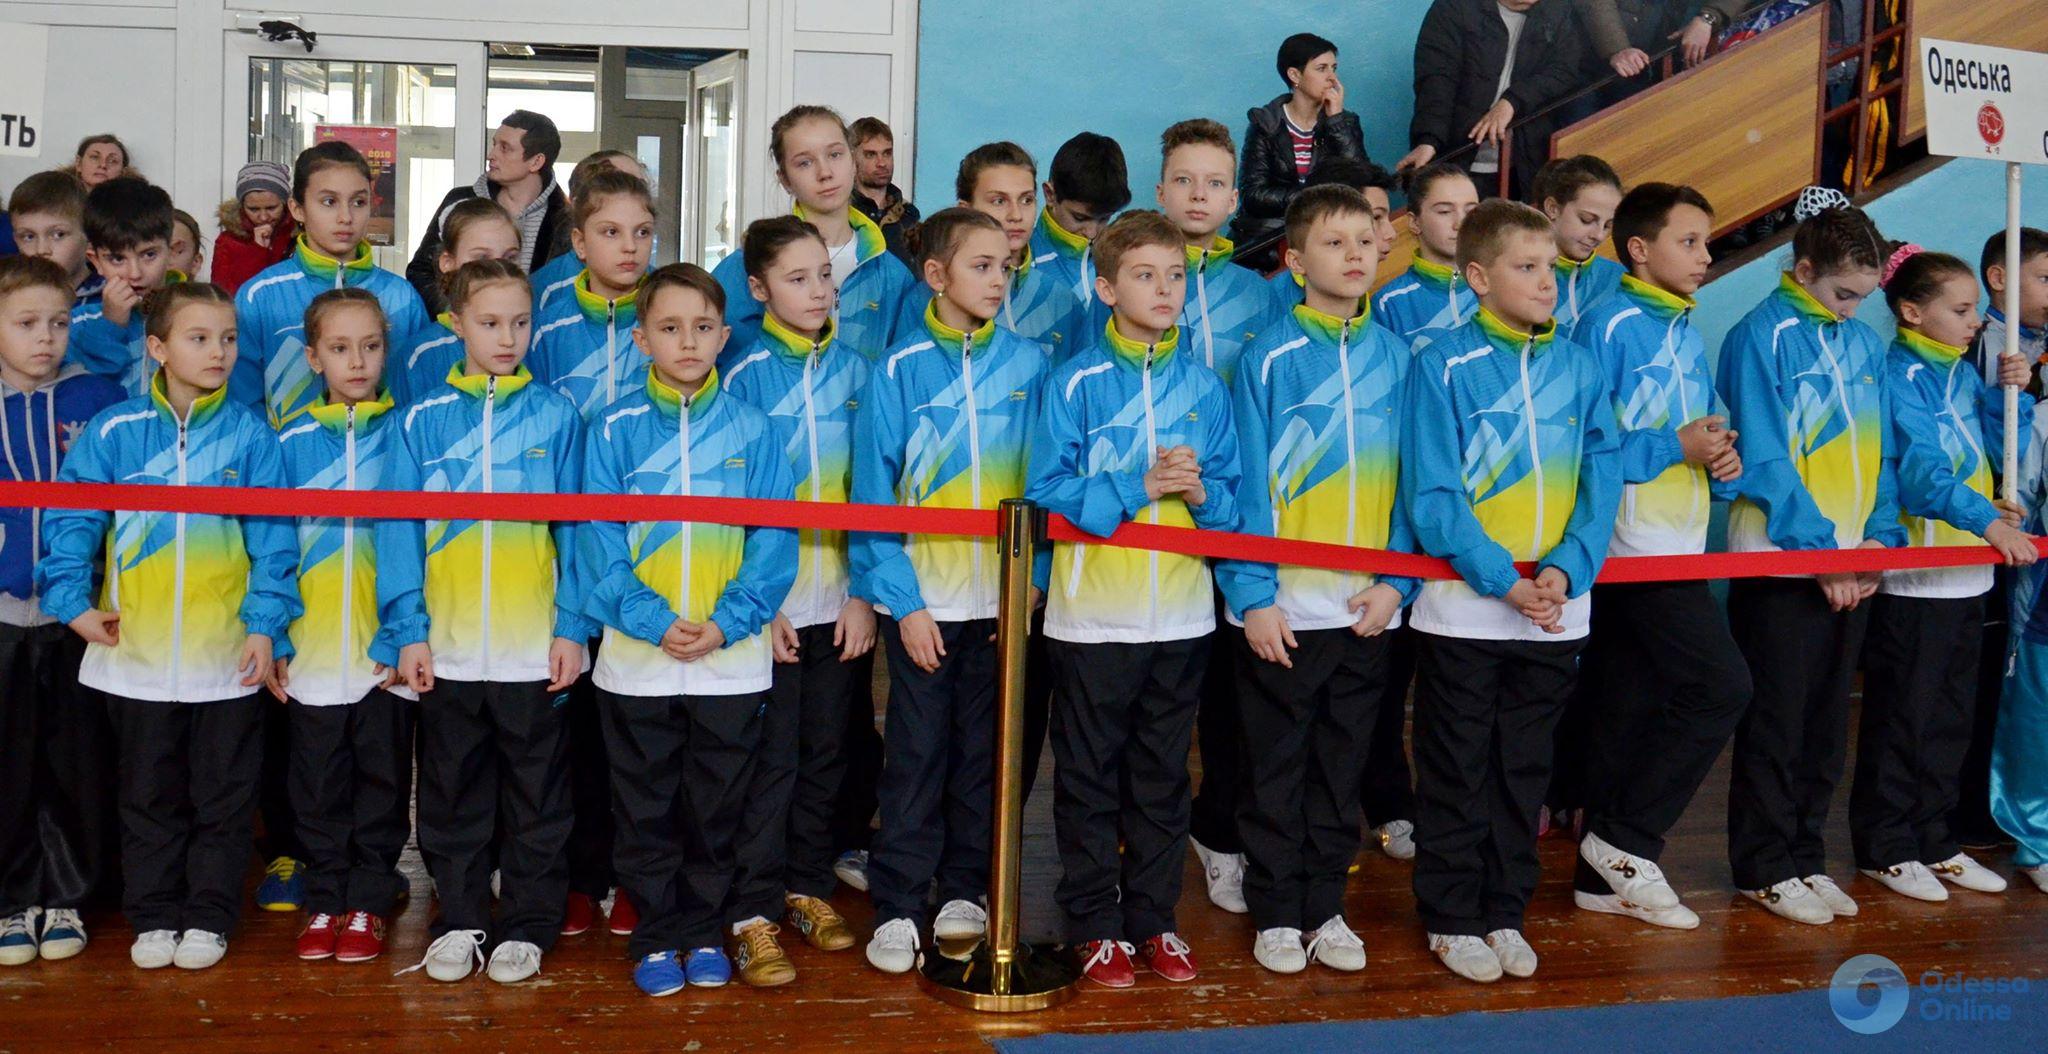 Сборная Одесской федерации ушу завоевала почти три десятка медалей юношеского чемпионата Украины